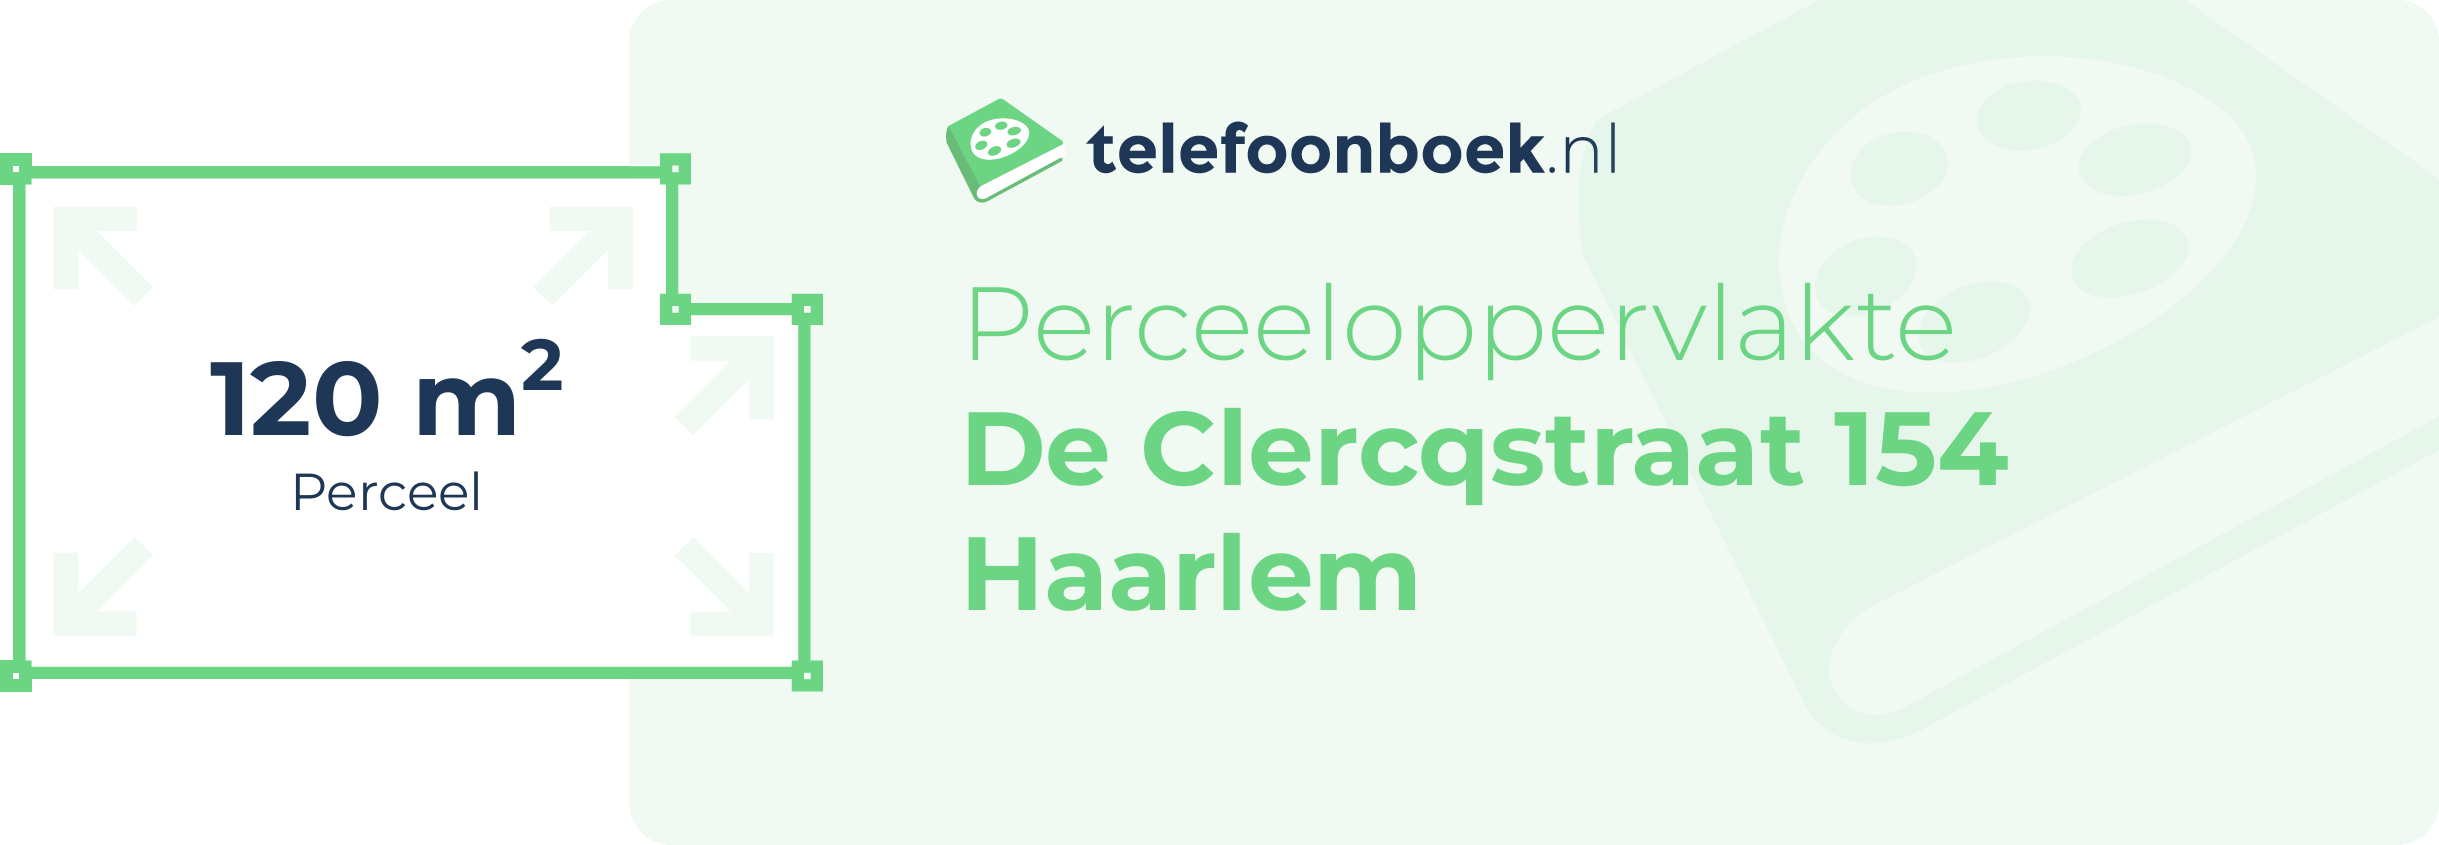 Perceeloppervlakte De Clercqstraat 154 Haarlem